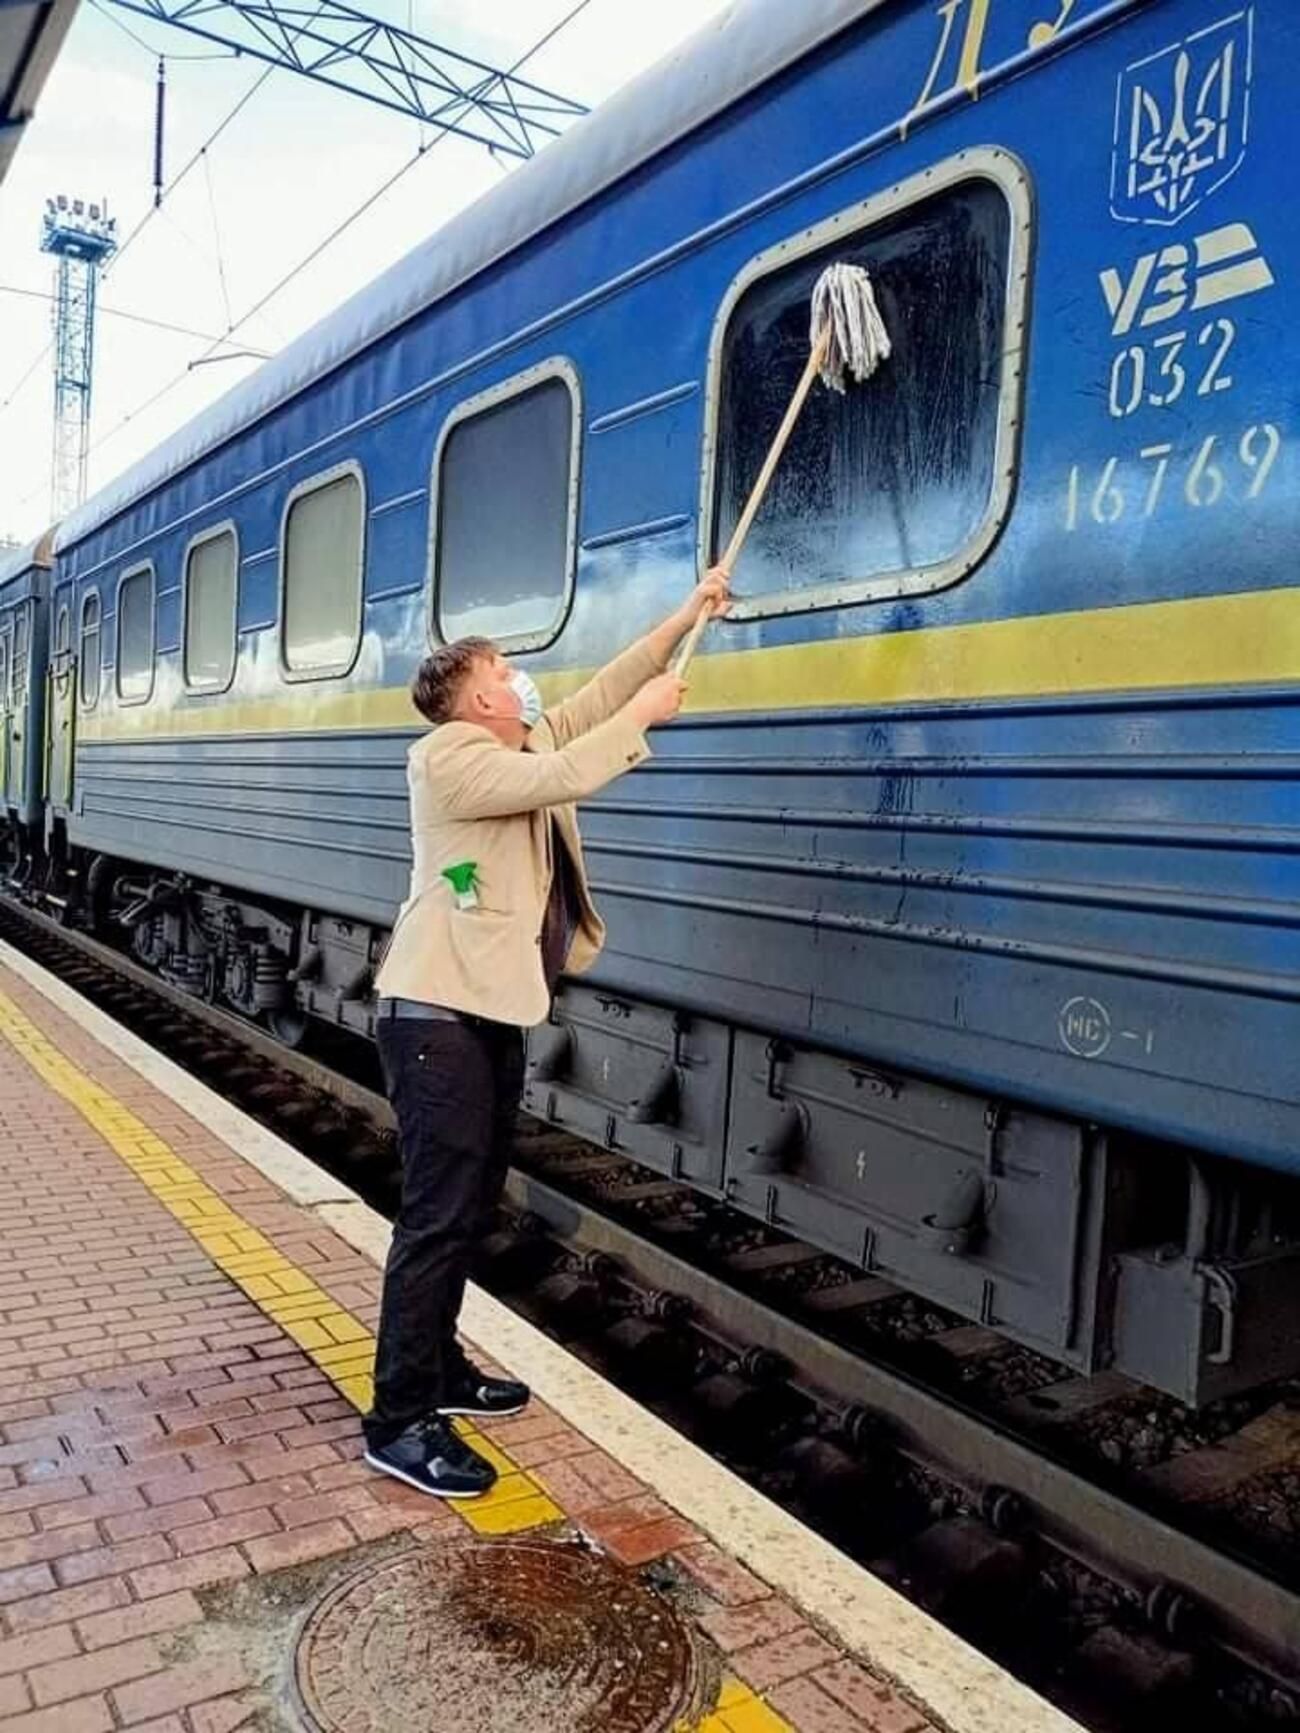 Показать детям Украину, – датчанин объяснил, почему мыл окно поезда УЗ